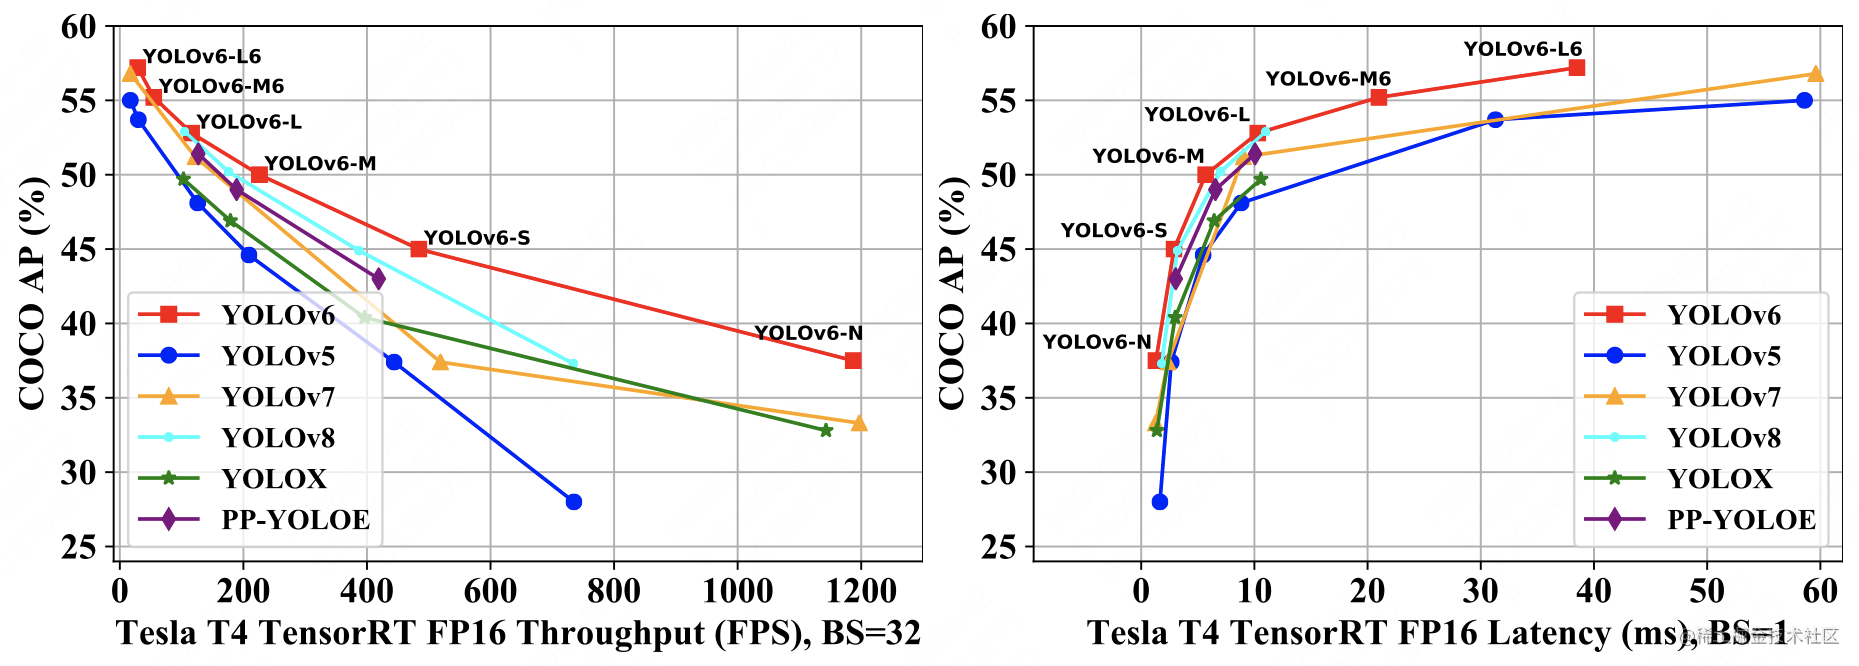 图1 YOLOv6 各尺寸模型与其他 YOLO 系列框架的性能对比图